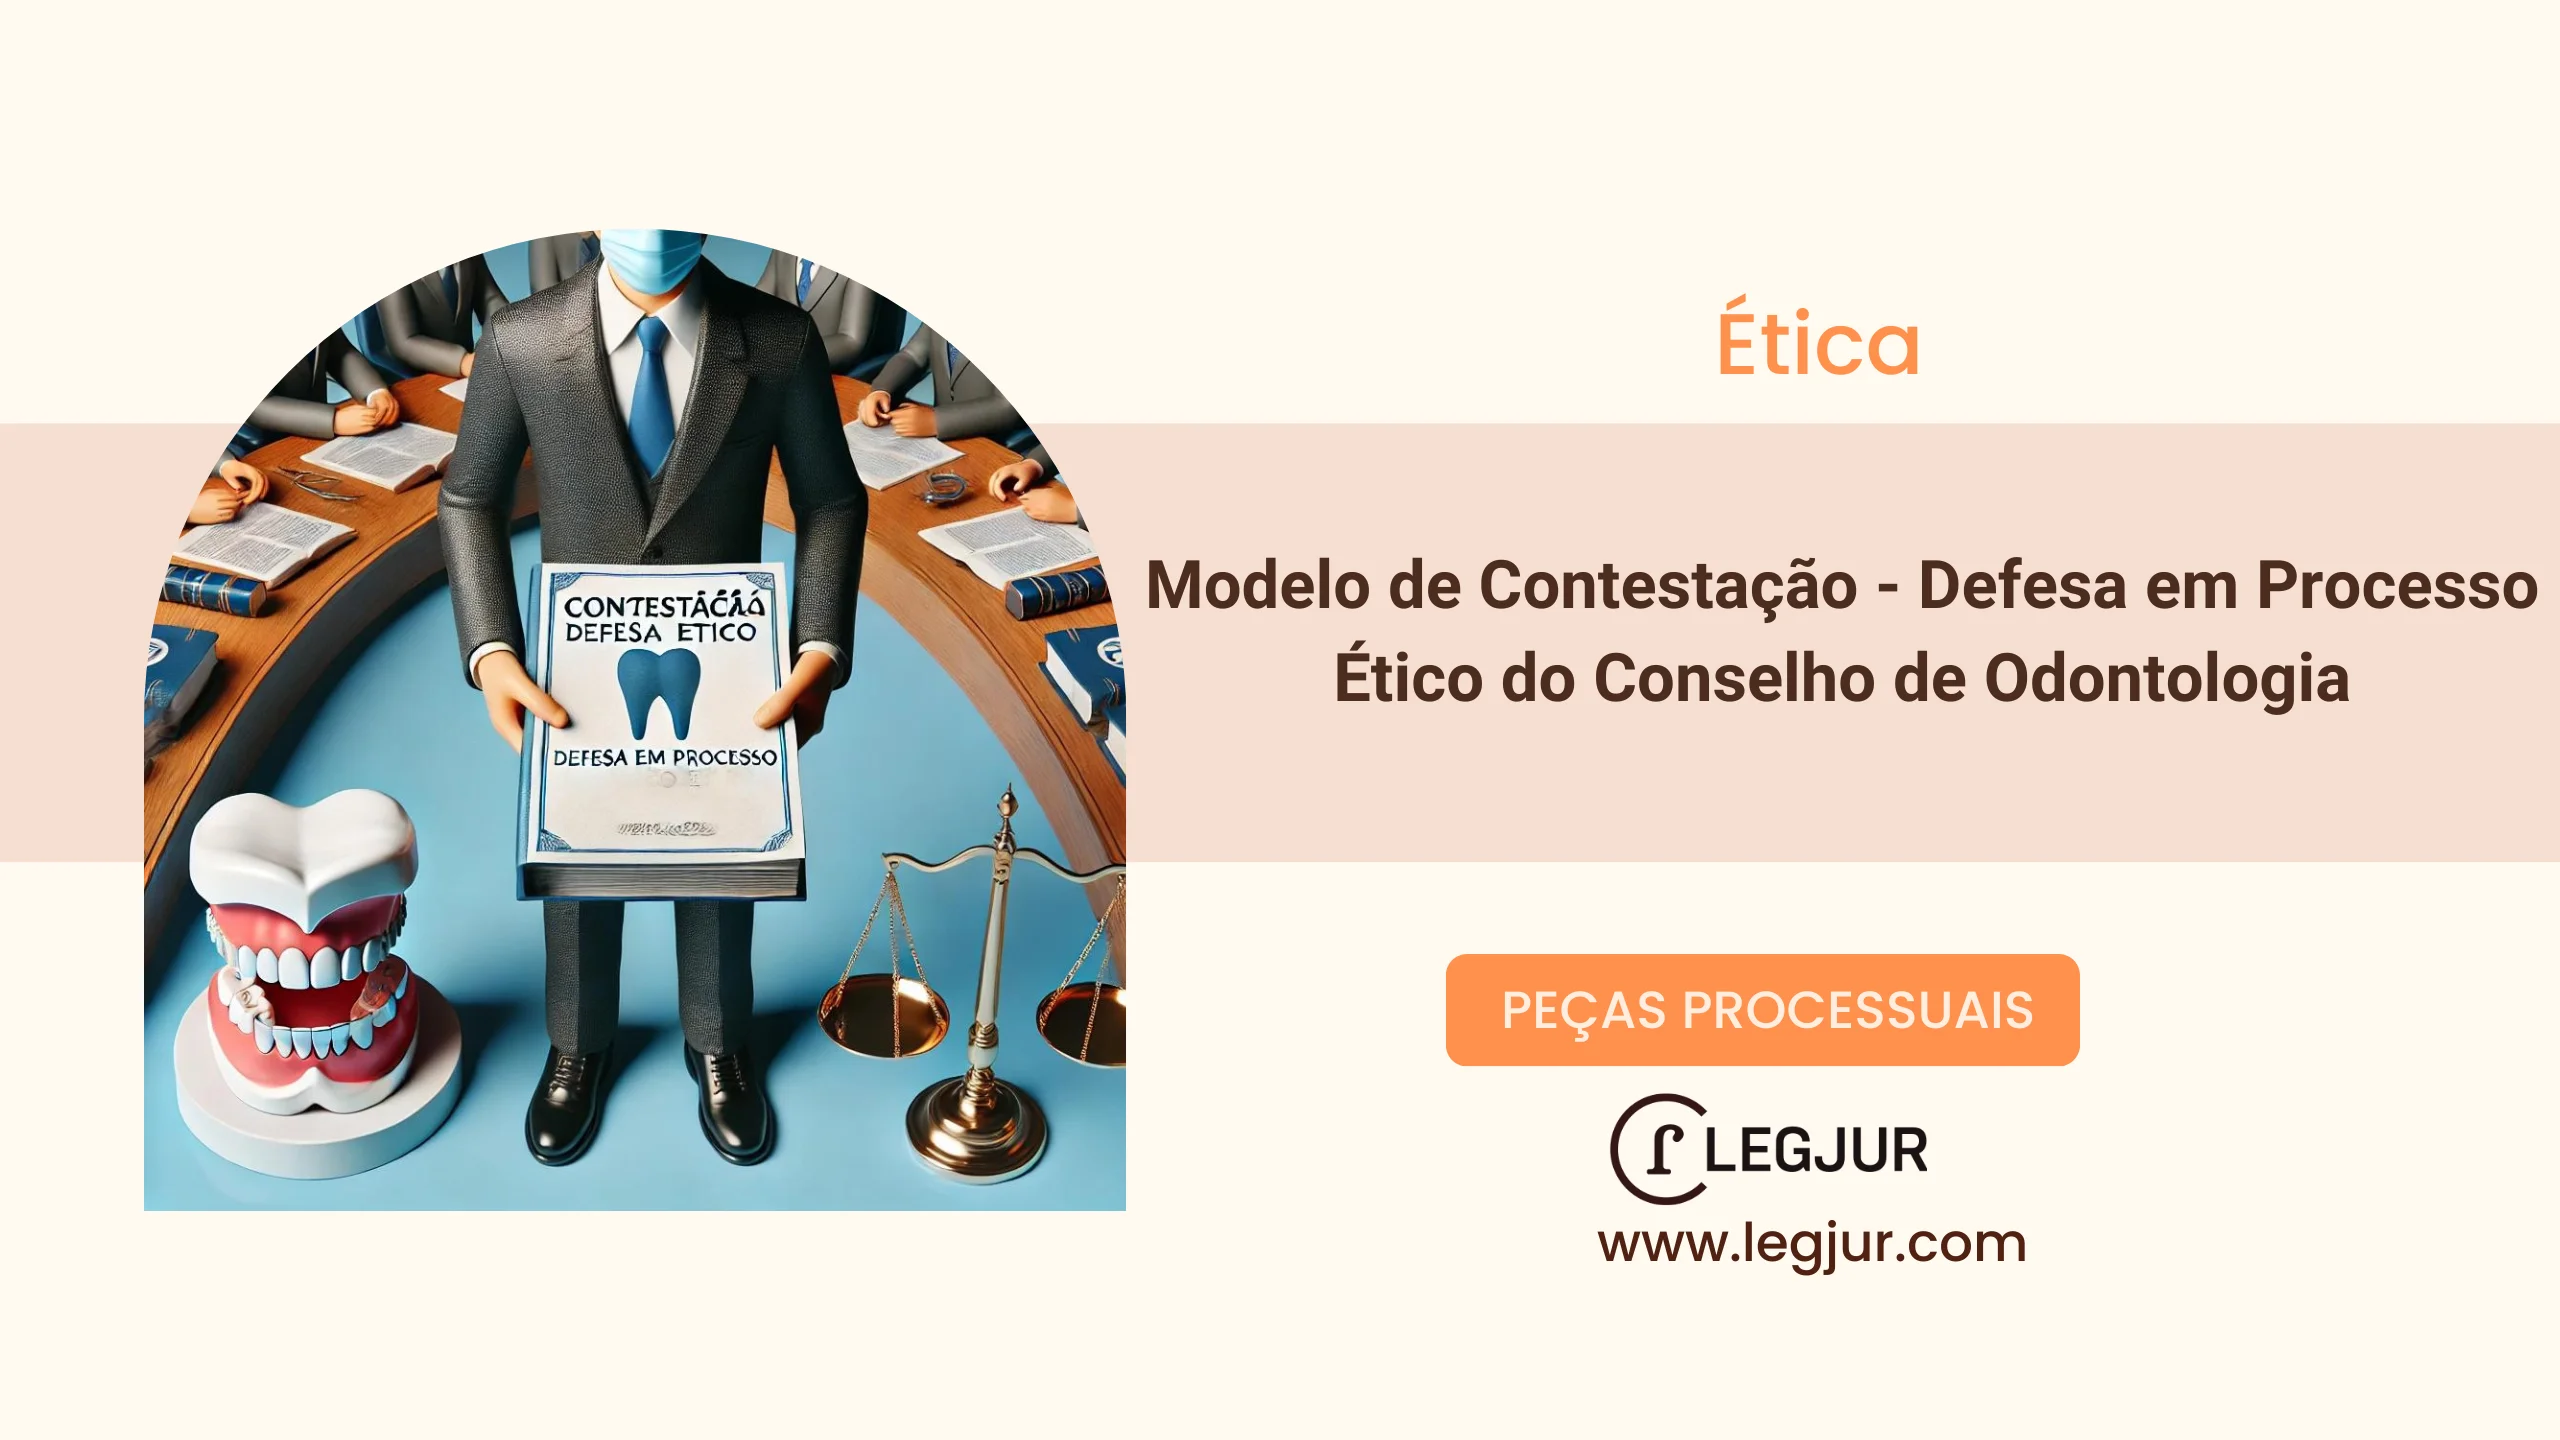 Modelo de Contestação - Defesa em Processo Ético do Conselho de Odontologia